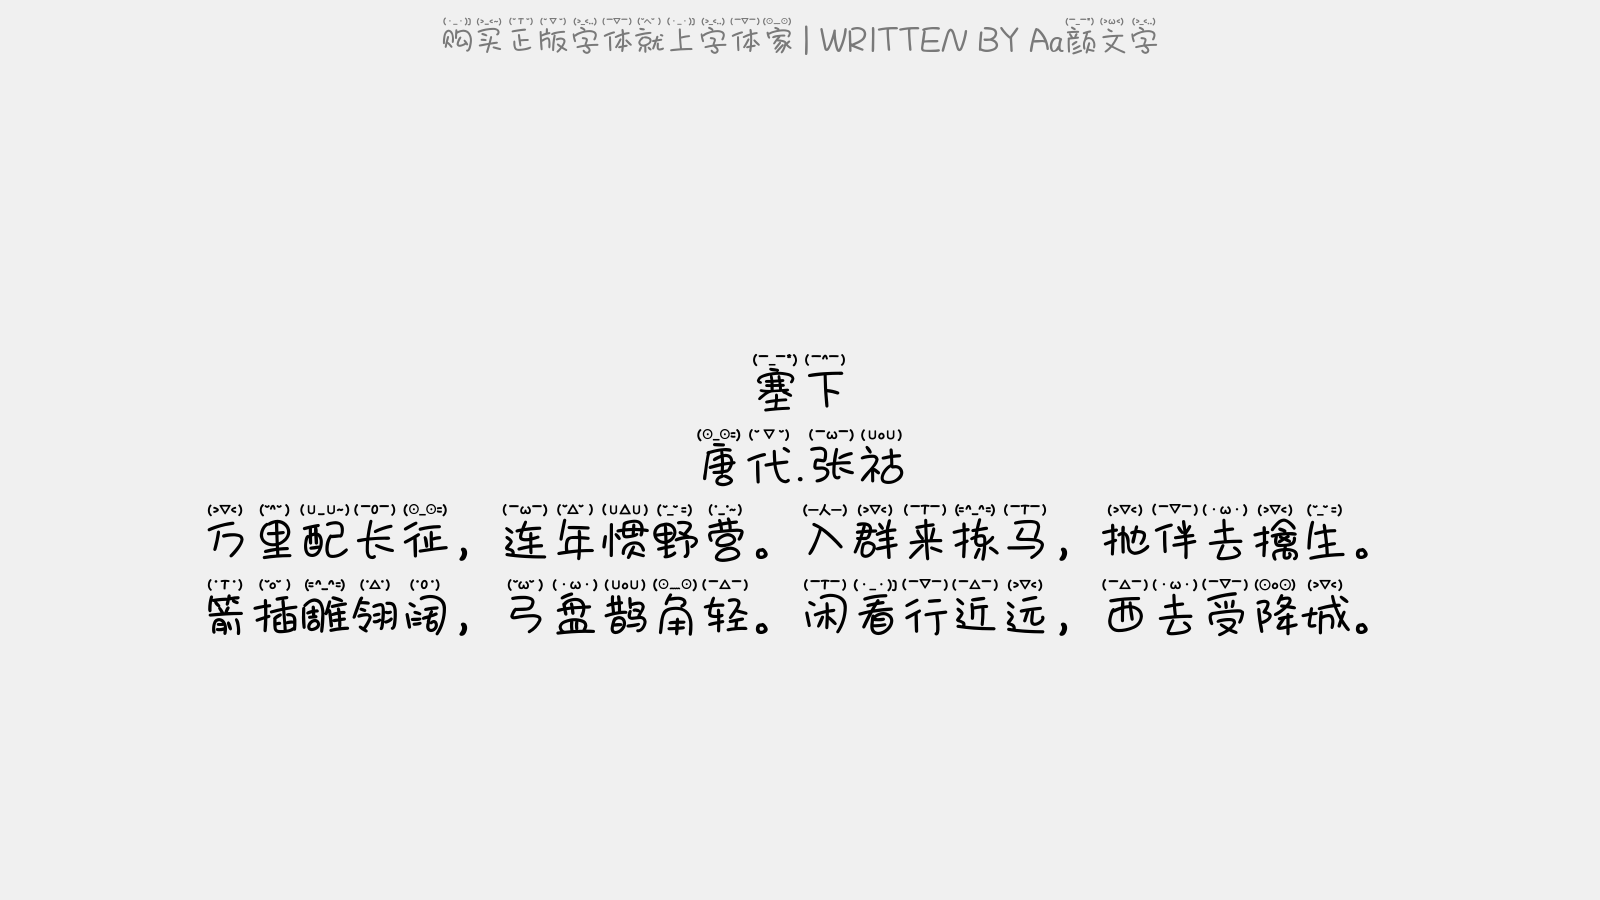 颜文字免费字体下载 中文字体免费下载尽在字体家